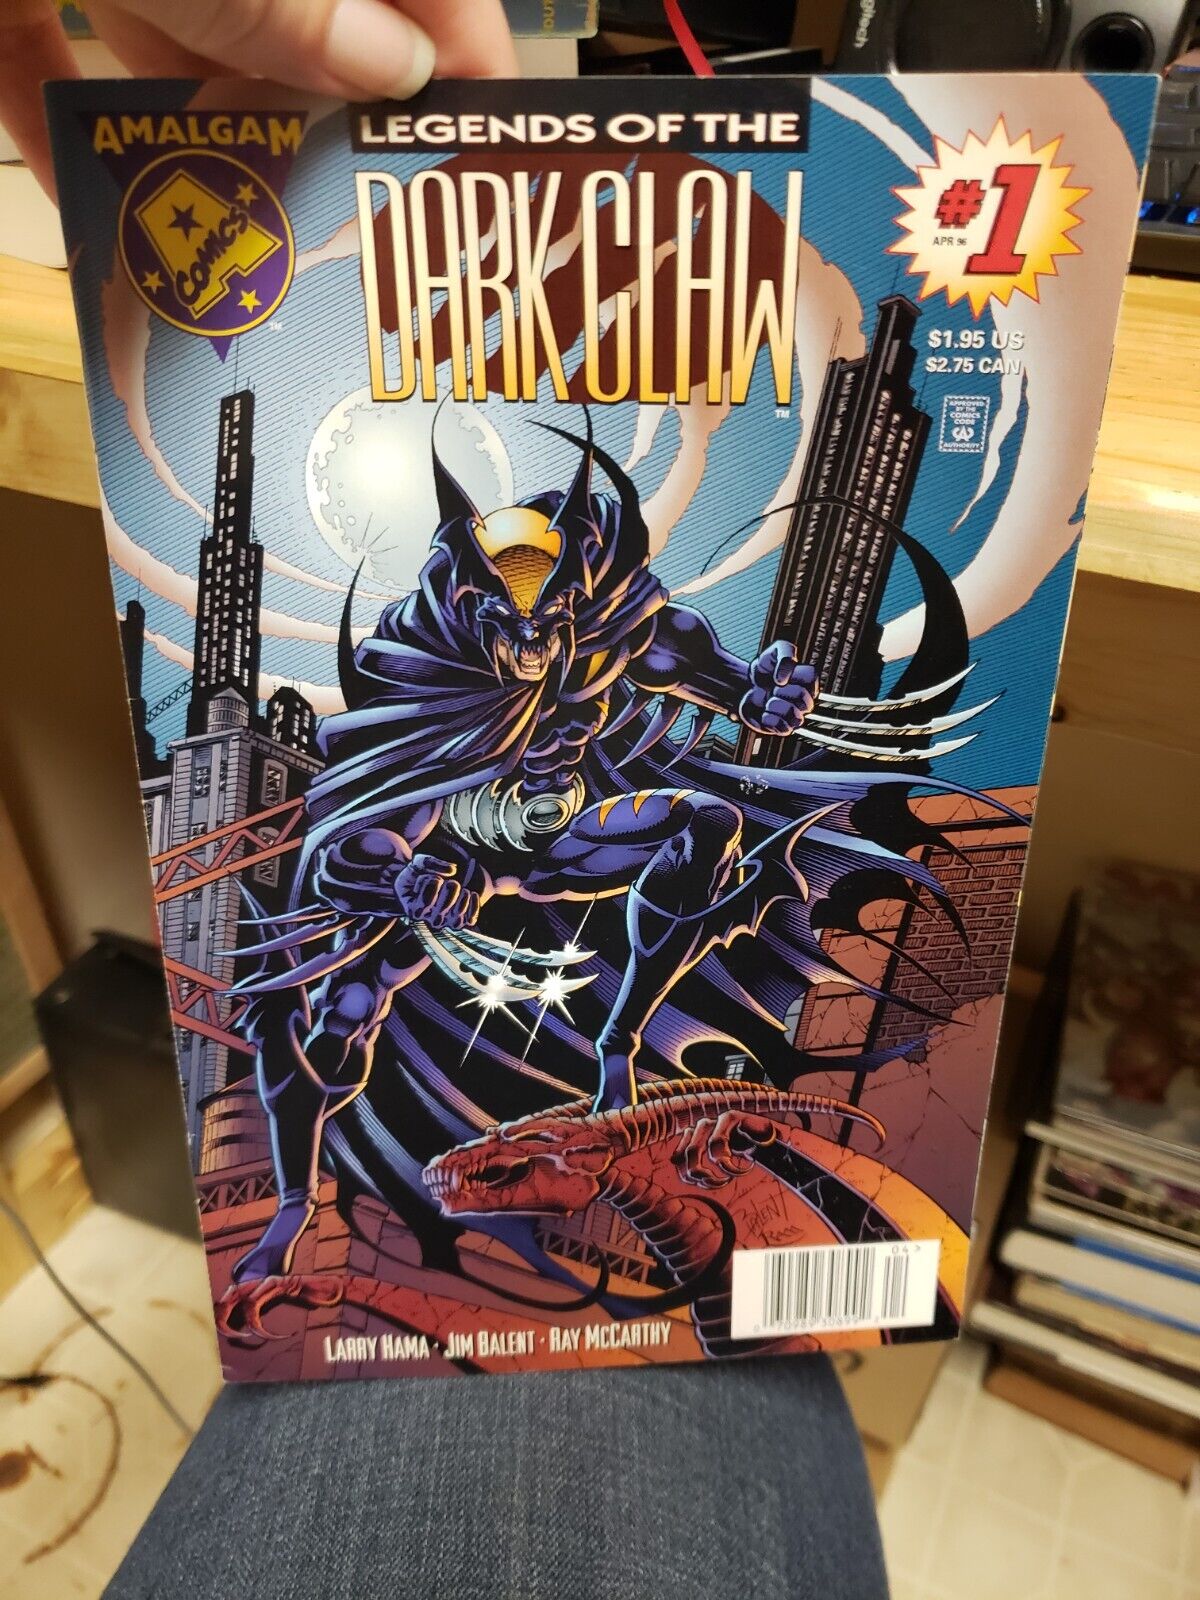 Legends of the Darkclaw 1 Amalgam Batman Wolverine Mash Up Newsstand